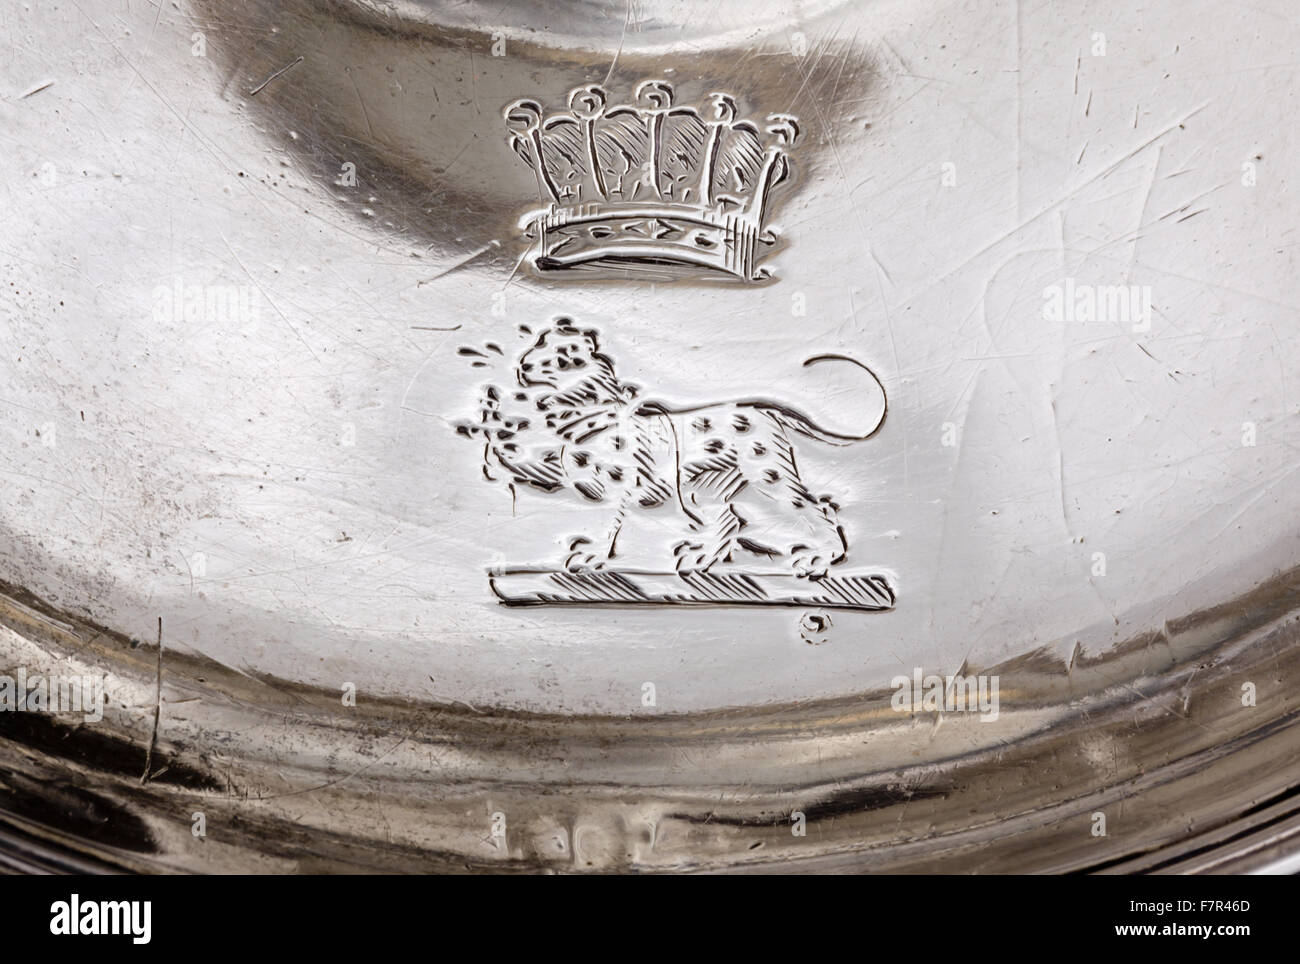 Kammer-stick, John Scofield, 1791, Silber bei Ickworth, Suffolk. Detail der gravierte Wappen und Earls Krönchen für die 4. oder 5. Earl of Bristol. National Trust Inventar Nummer 852189.7-10. Stockfoto